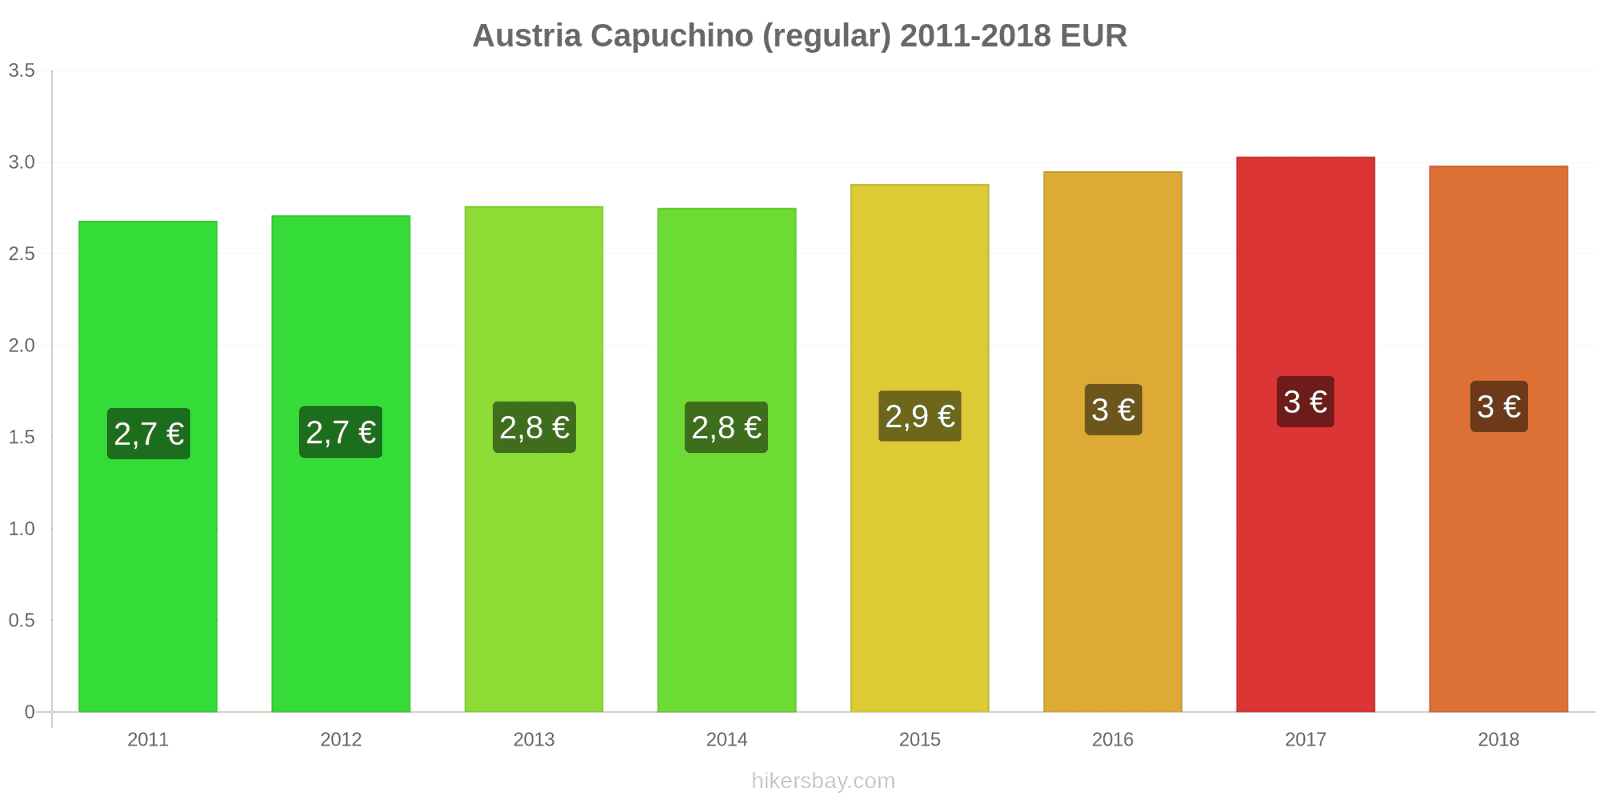 Austria cambios de precios Cappuccino hikersbay.com